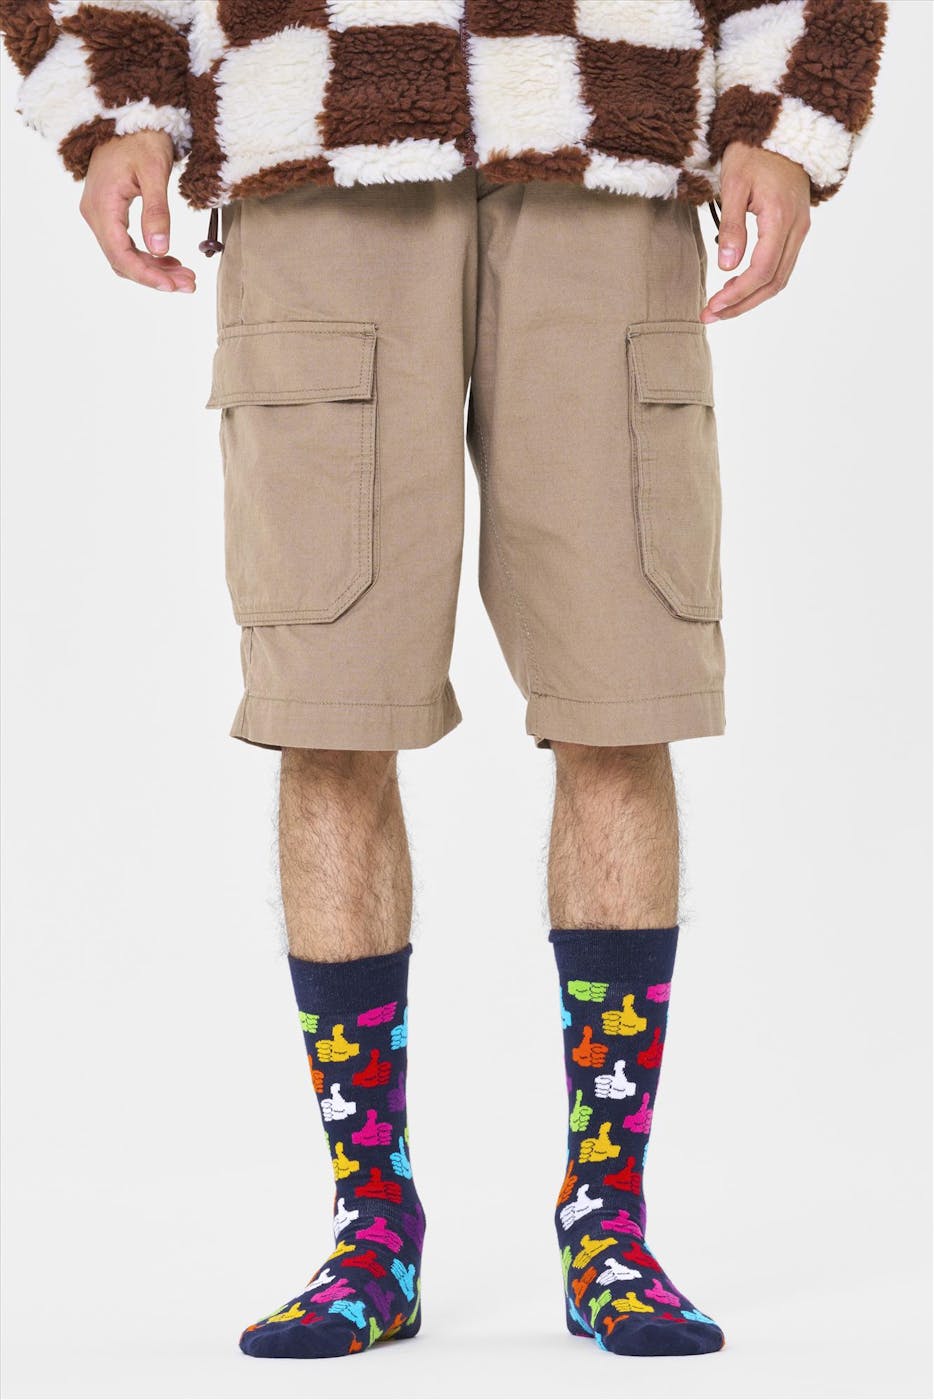 Happy Socks - Donkerblauw-multicolor Thumbs Up Sokken, maat 36-40